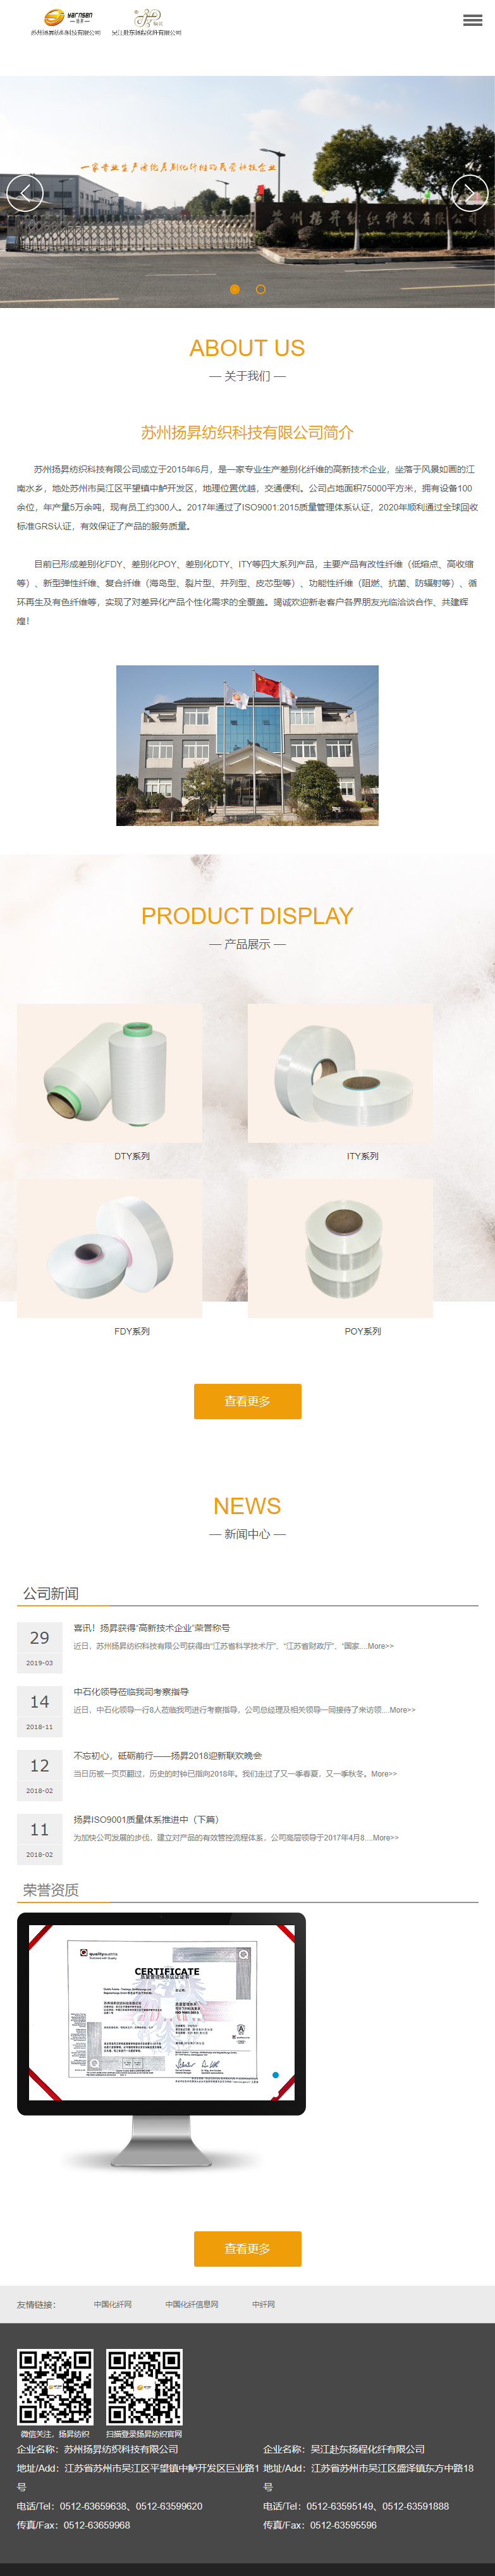 苏州扬昇纺织科技有限公司网站案例